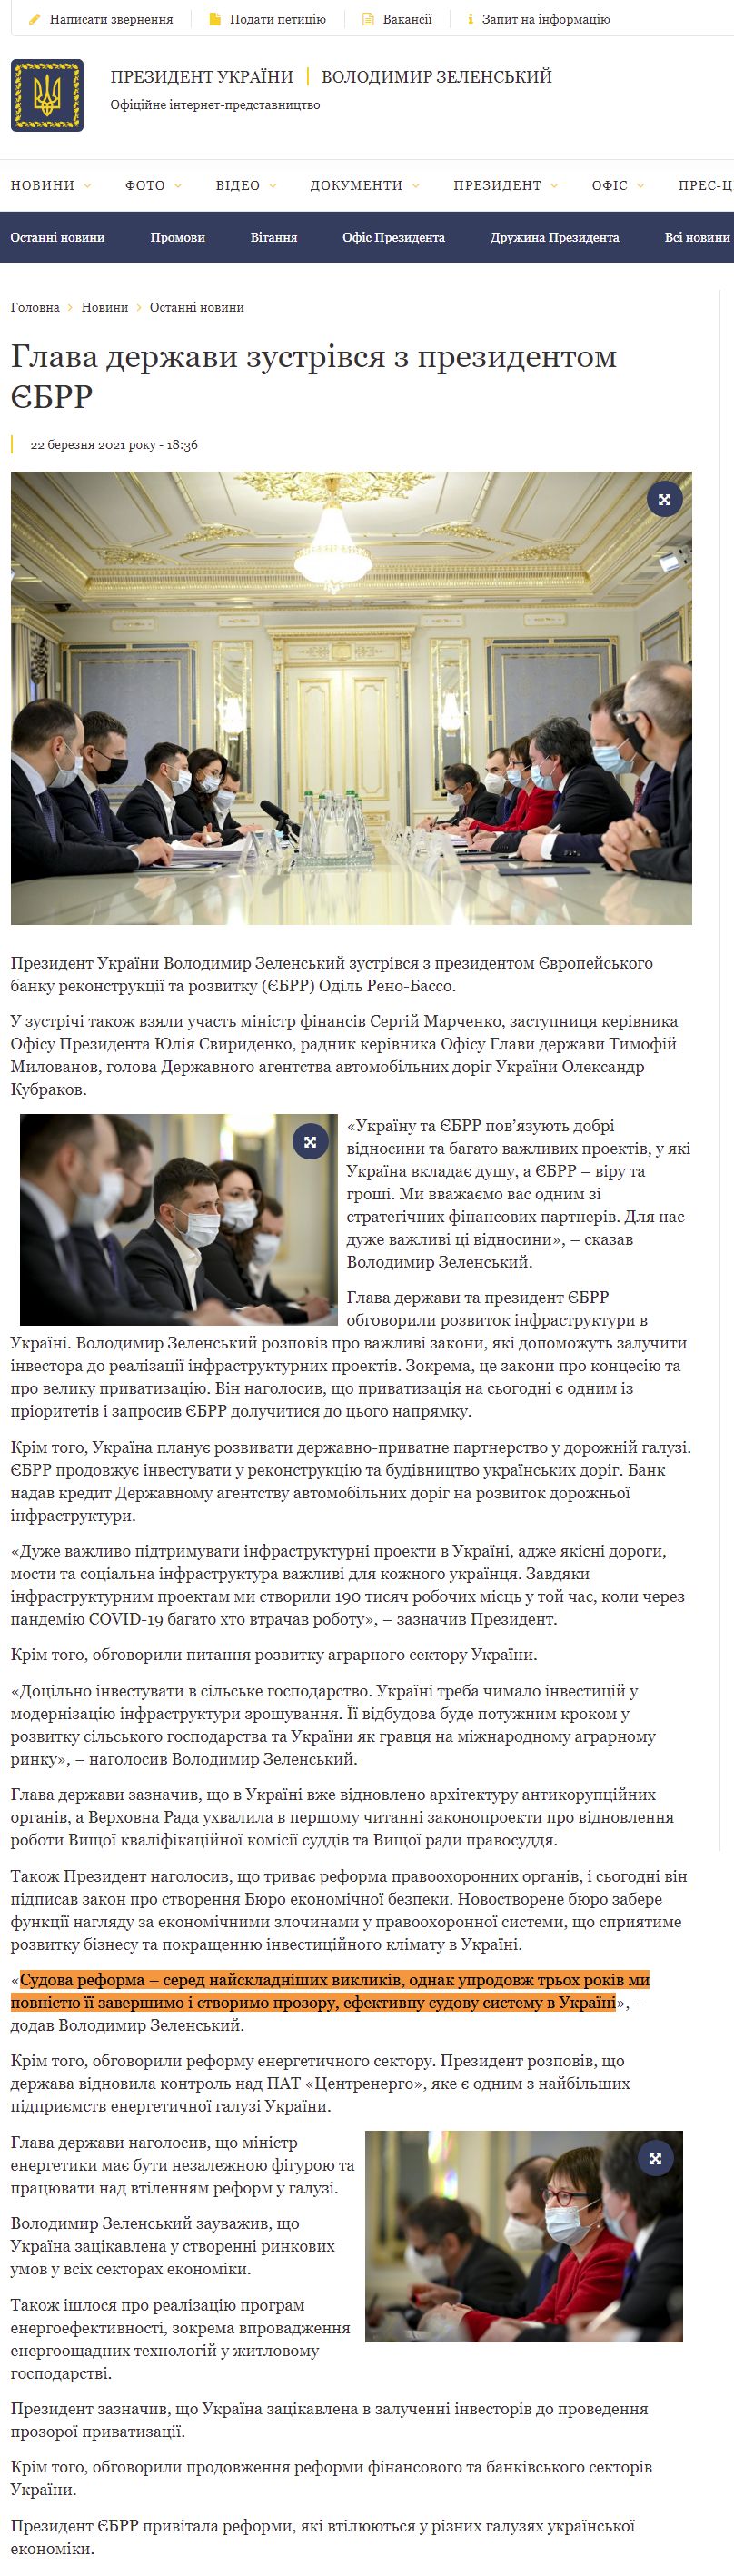 https://www.president.gov.ua/news/glava-derzhavi-zustrivsya-z-prezidentom-yebrr-67281